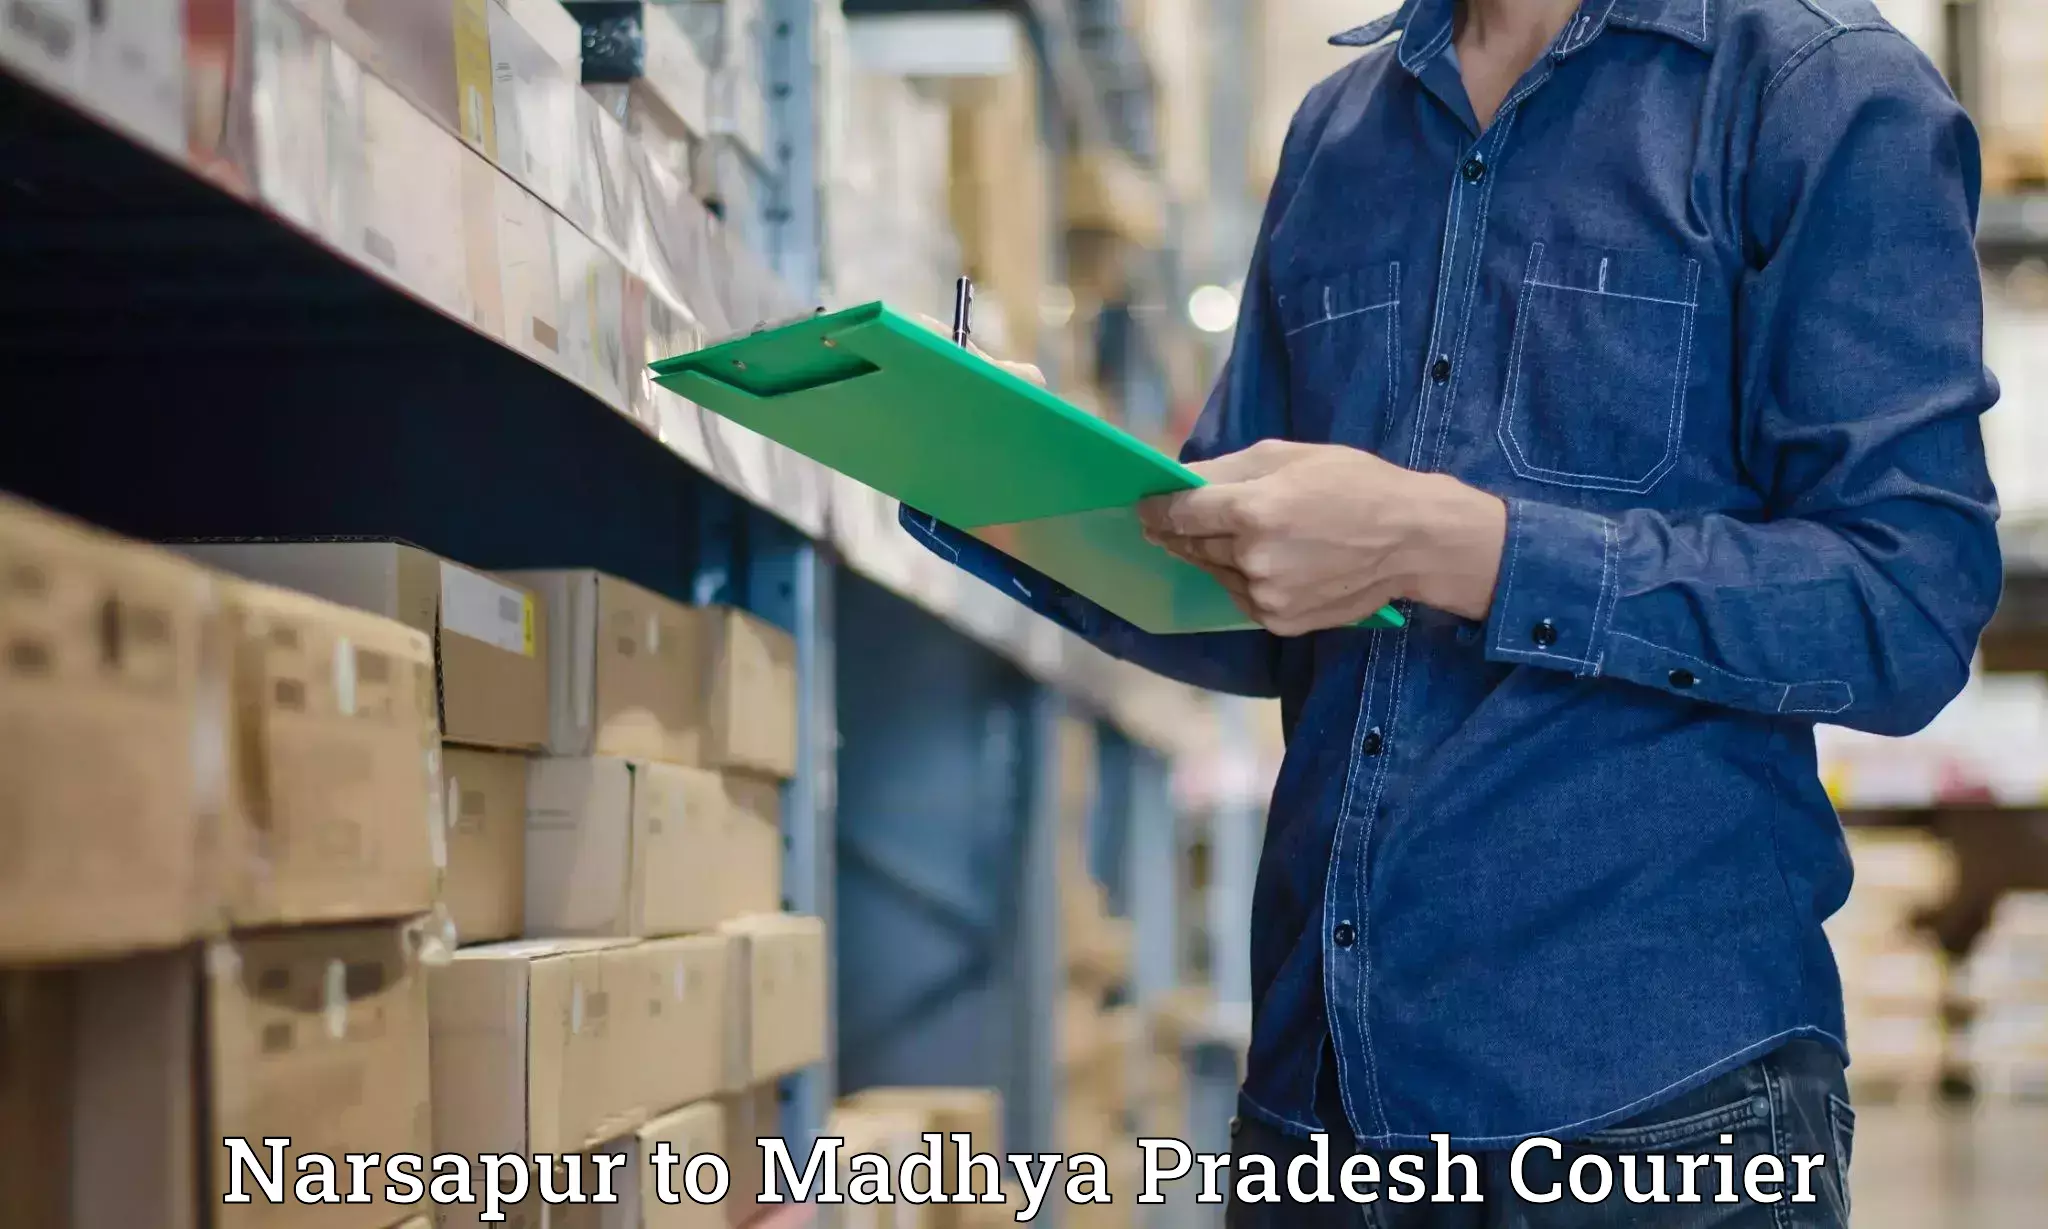 On-demand courier Narsapur to Madhya Pradesh